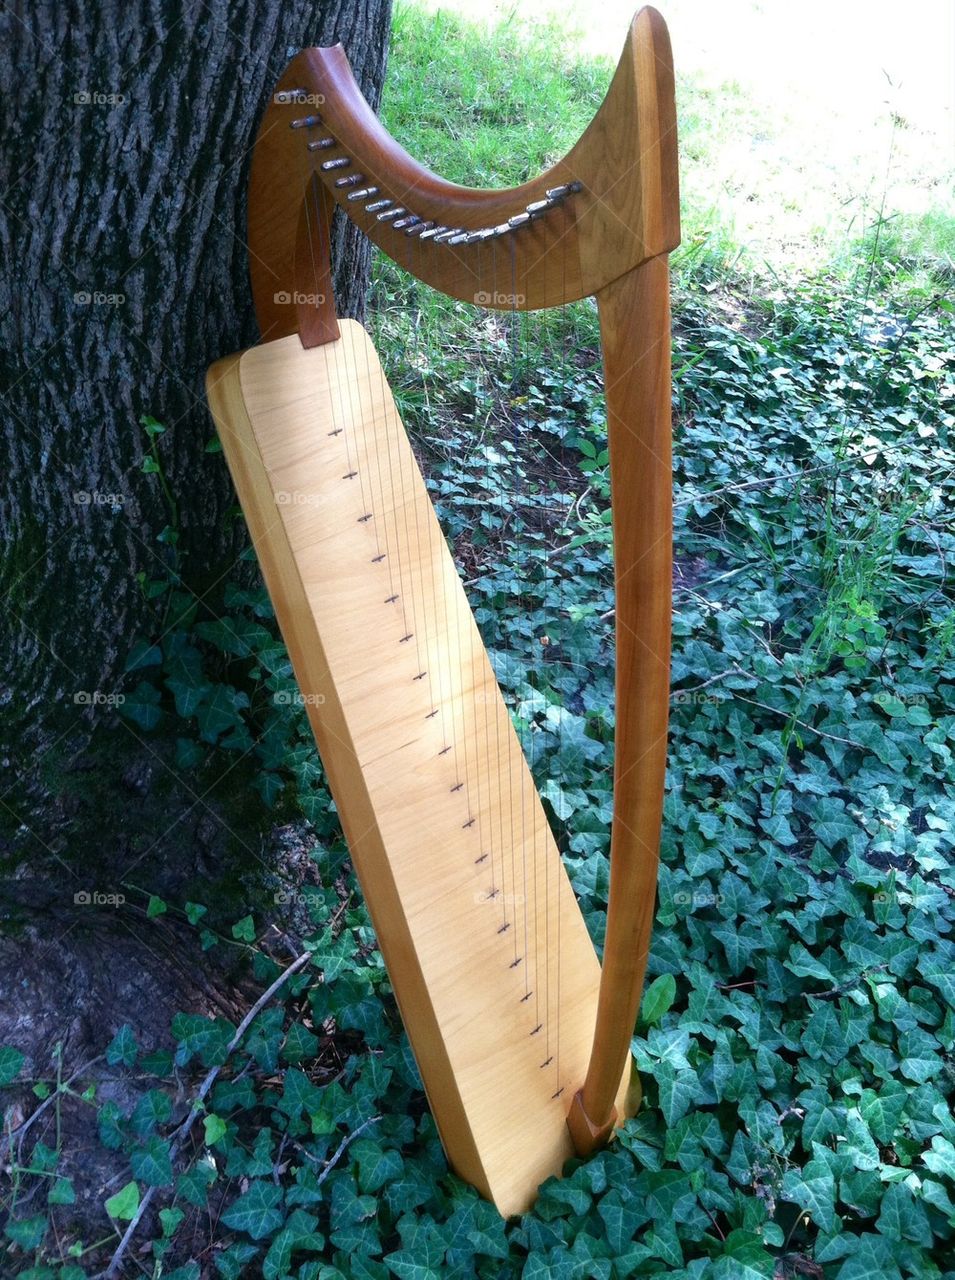 Gothic Harp